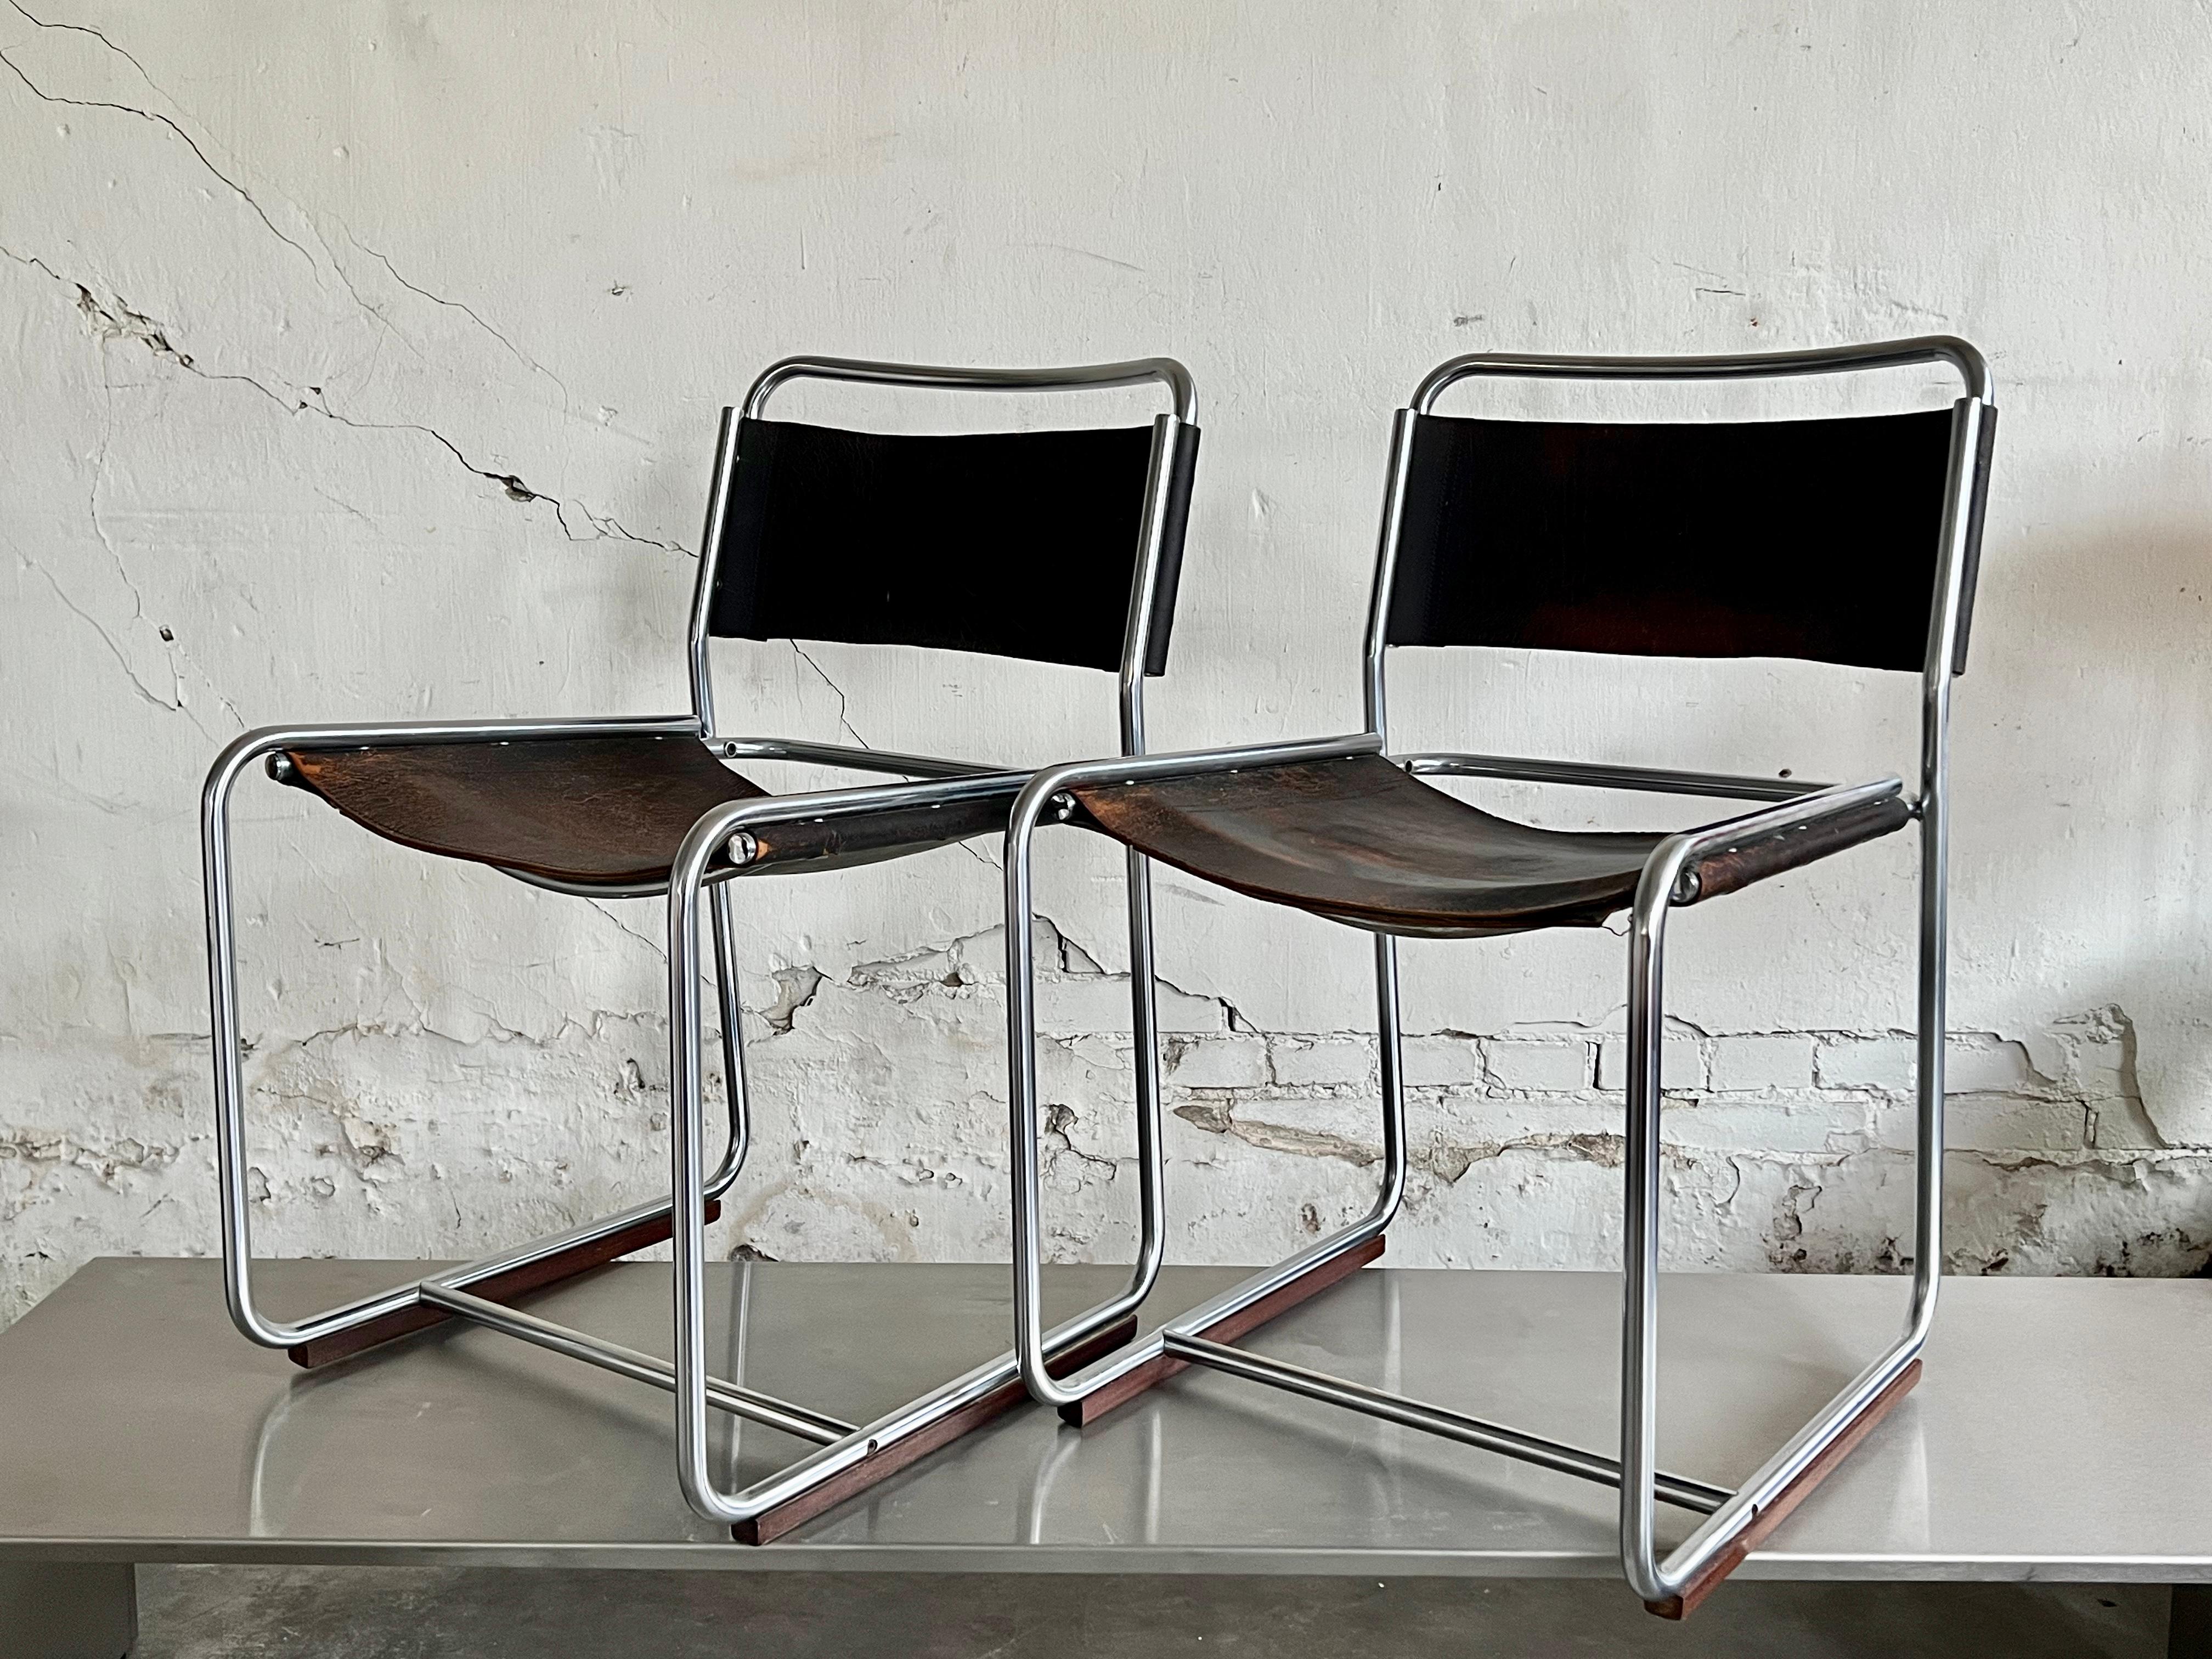 Rare paire de chaises SE18 des designers belges Claire Bataille et Paul Ibens, produite par 't Spectrum. Ce modèle n'a été produit que de 1971 à 1974. Très limité par rapport aux autres modèles d'AT&T, d'où leur rareté.
 
Le design est très